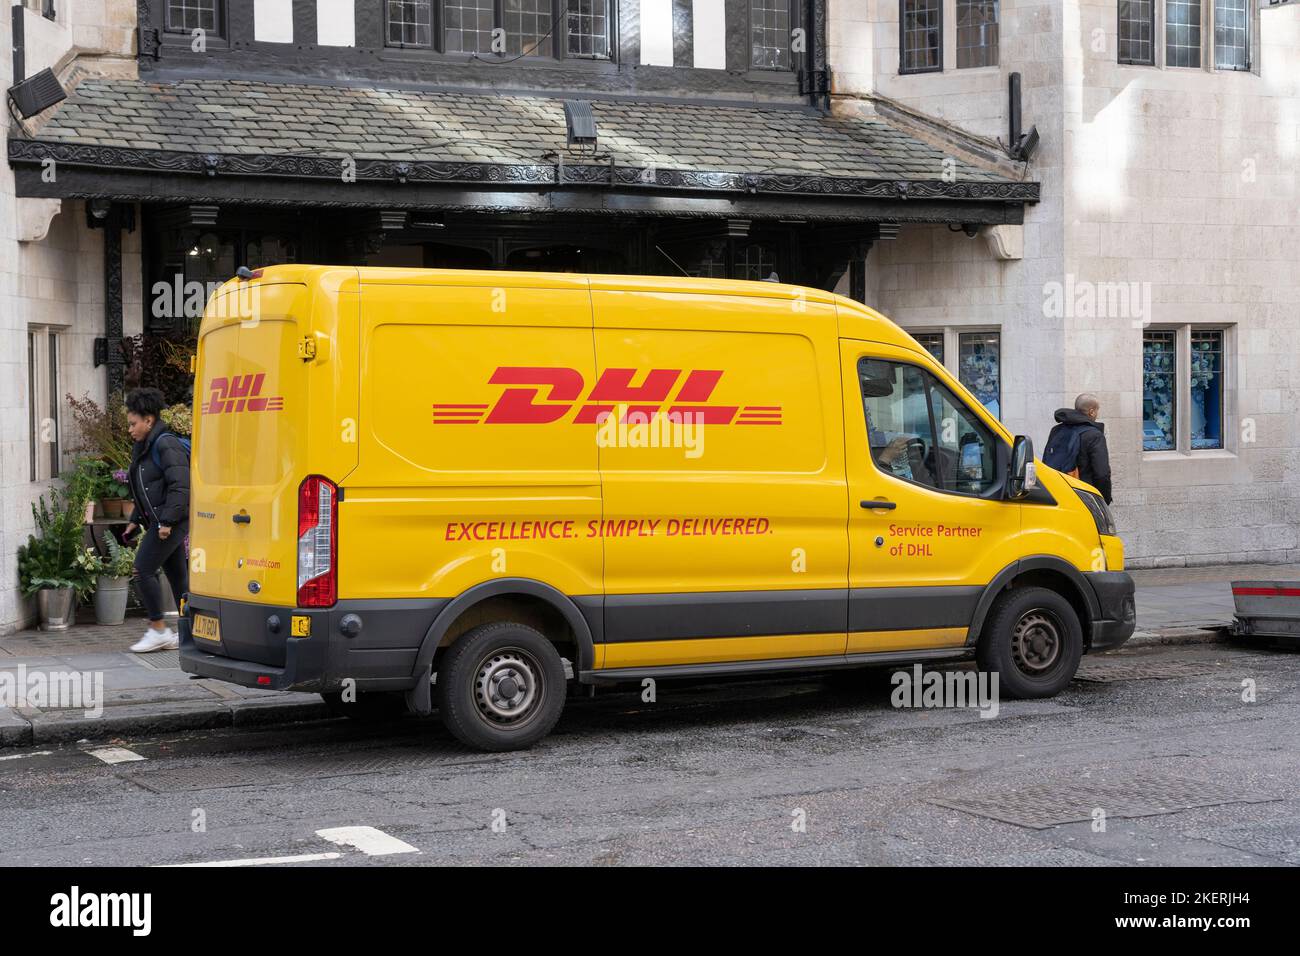 Minibus de livraison DHL à Londres. DHL est une société de logistique allemande qui fournit des services de courrier, de livraison de colis et de courrier express, appartenant à Deutsche Post Banque D'Images